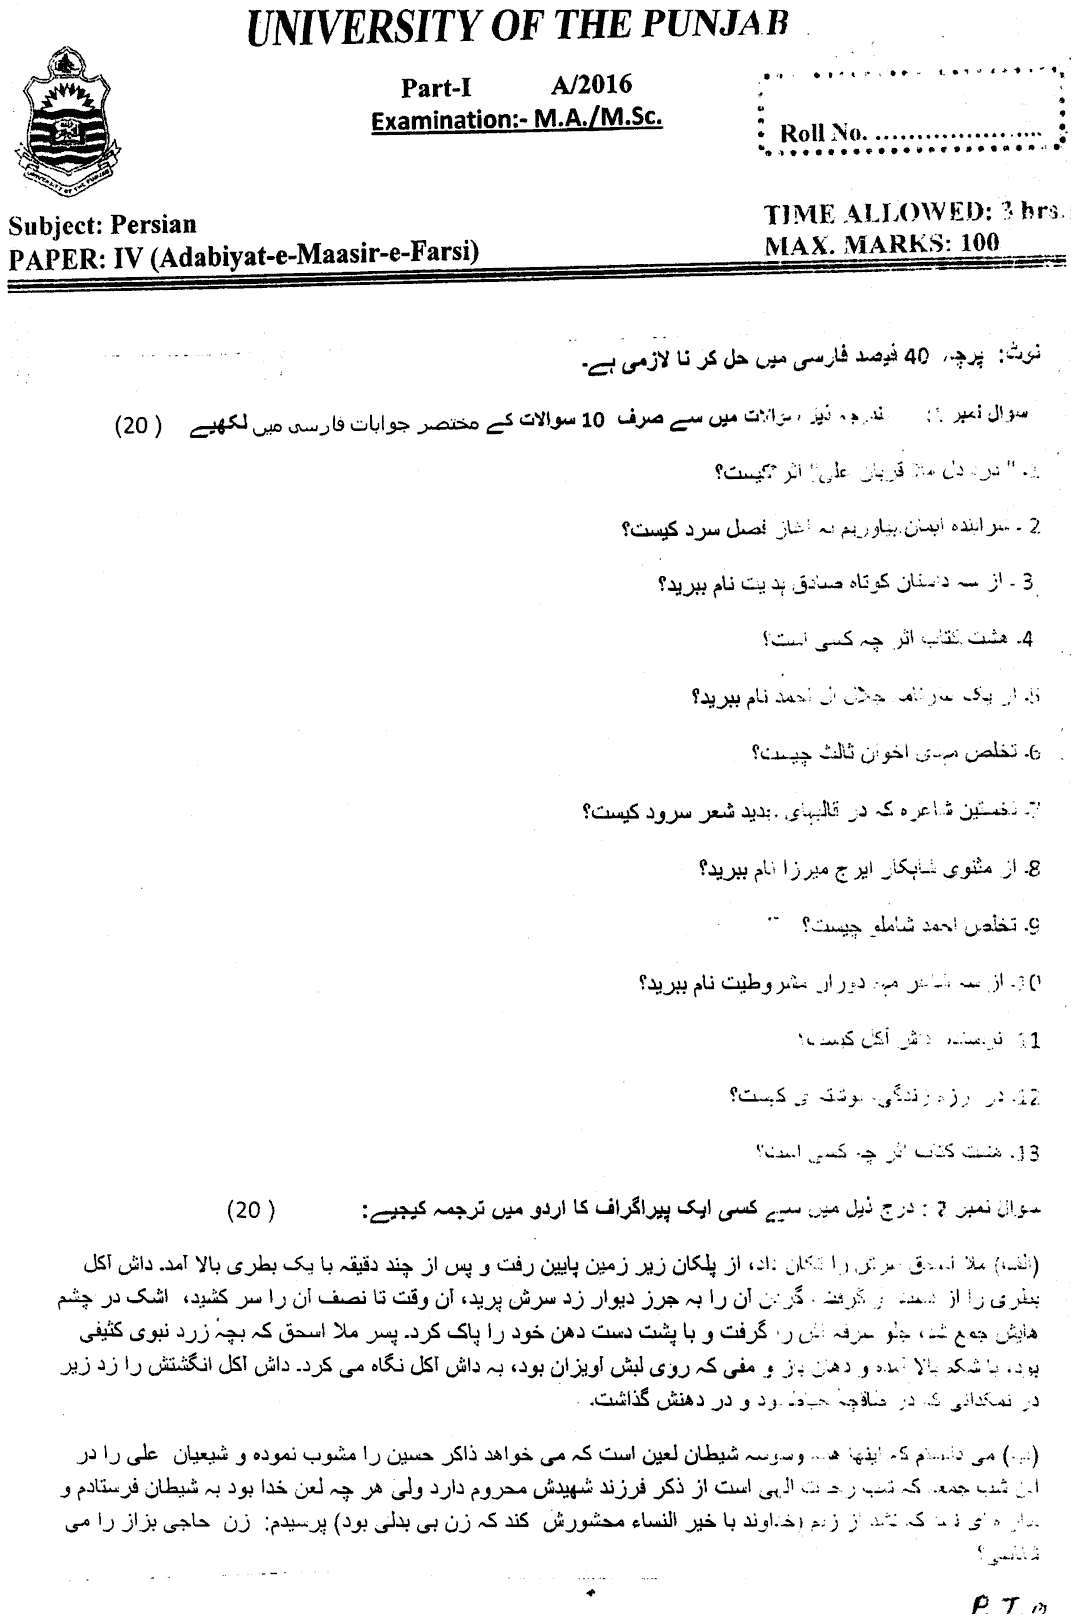 Ma Part 1 Persian Adabiyat E Maasir E Farsi Past Paper 2016 Punjab University